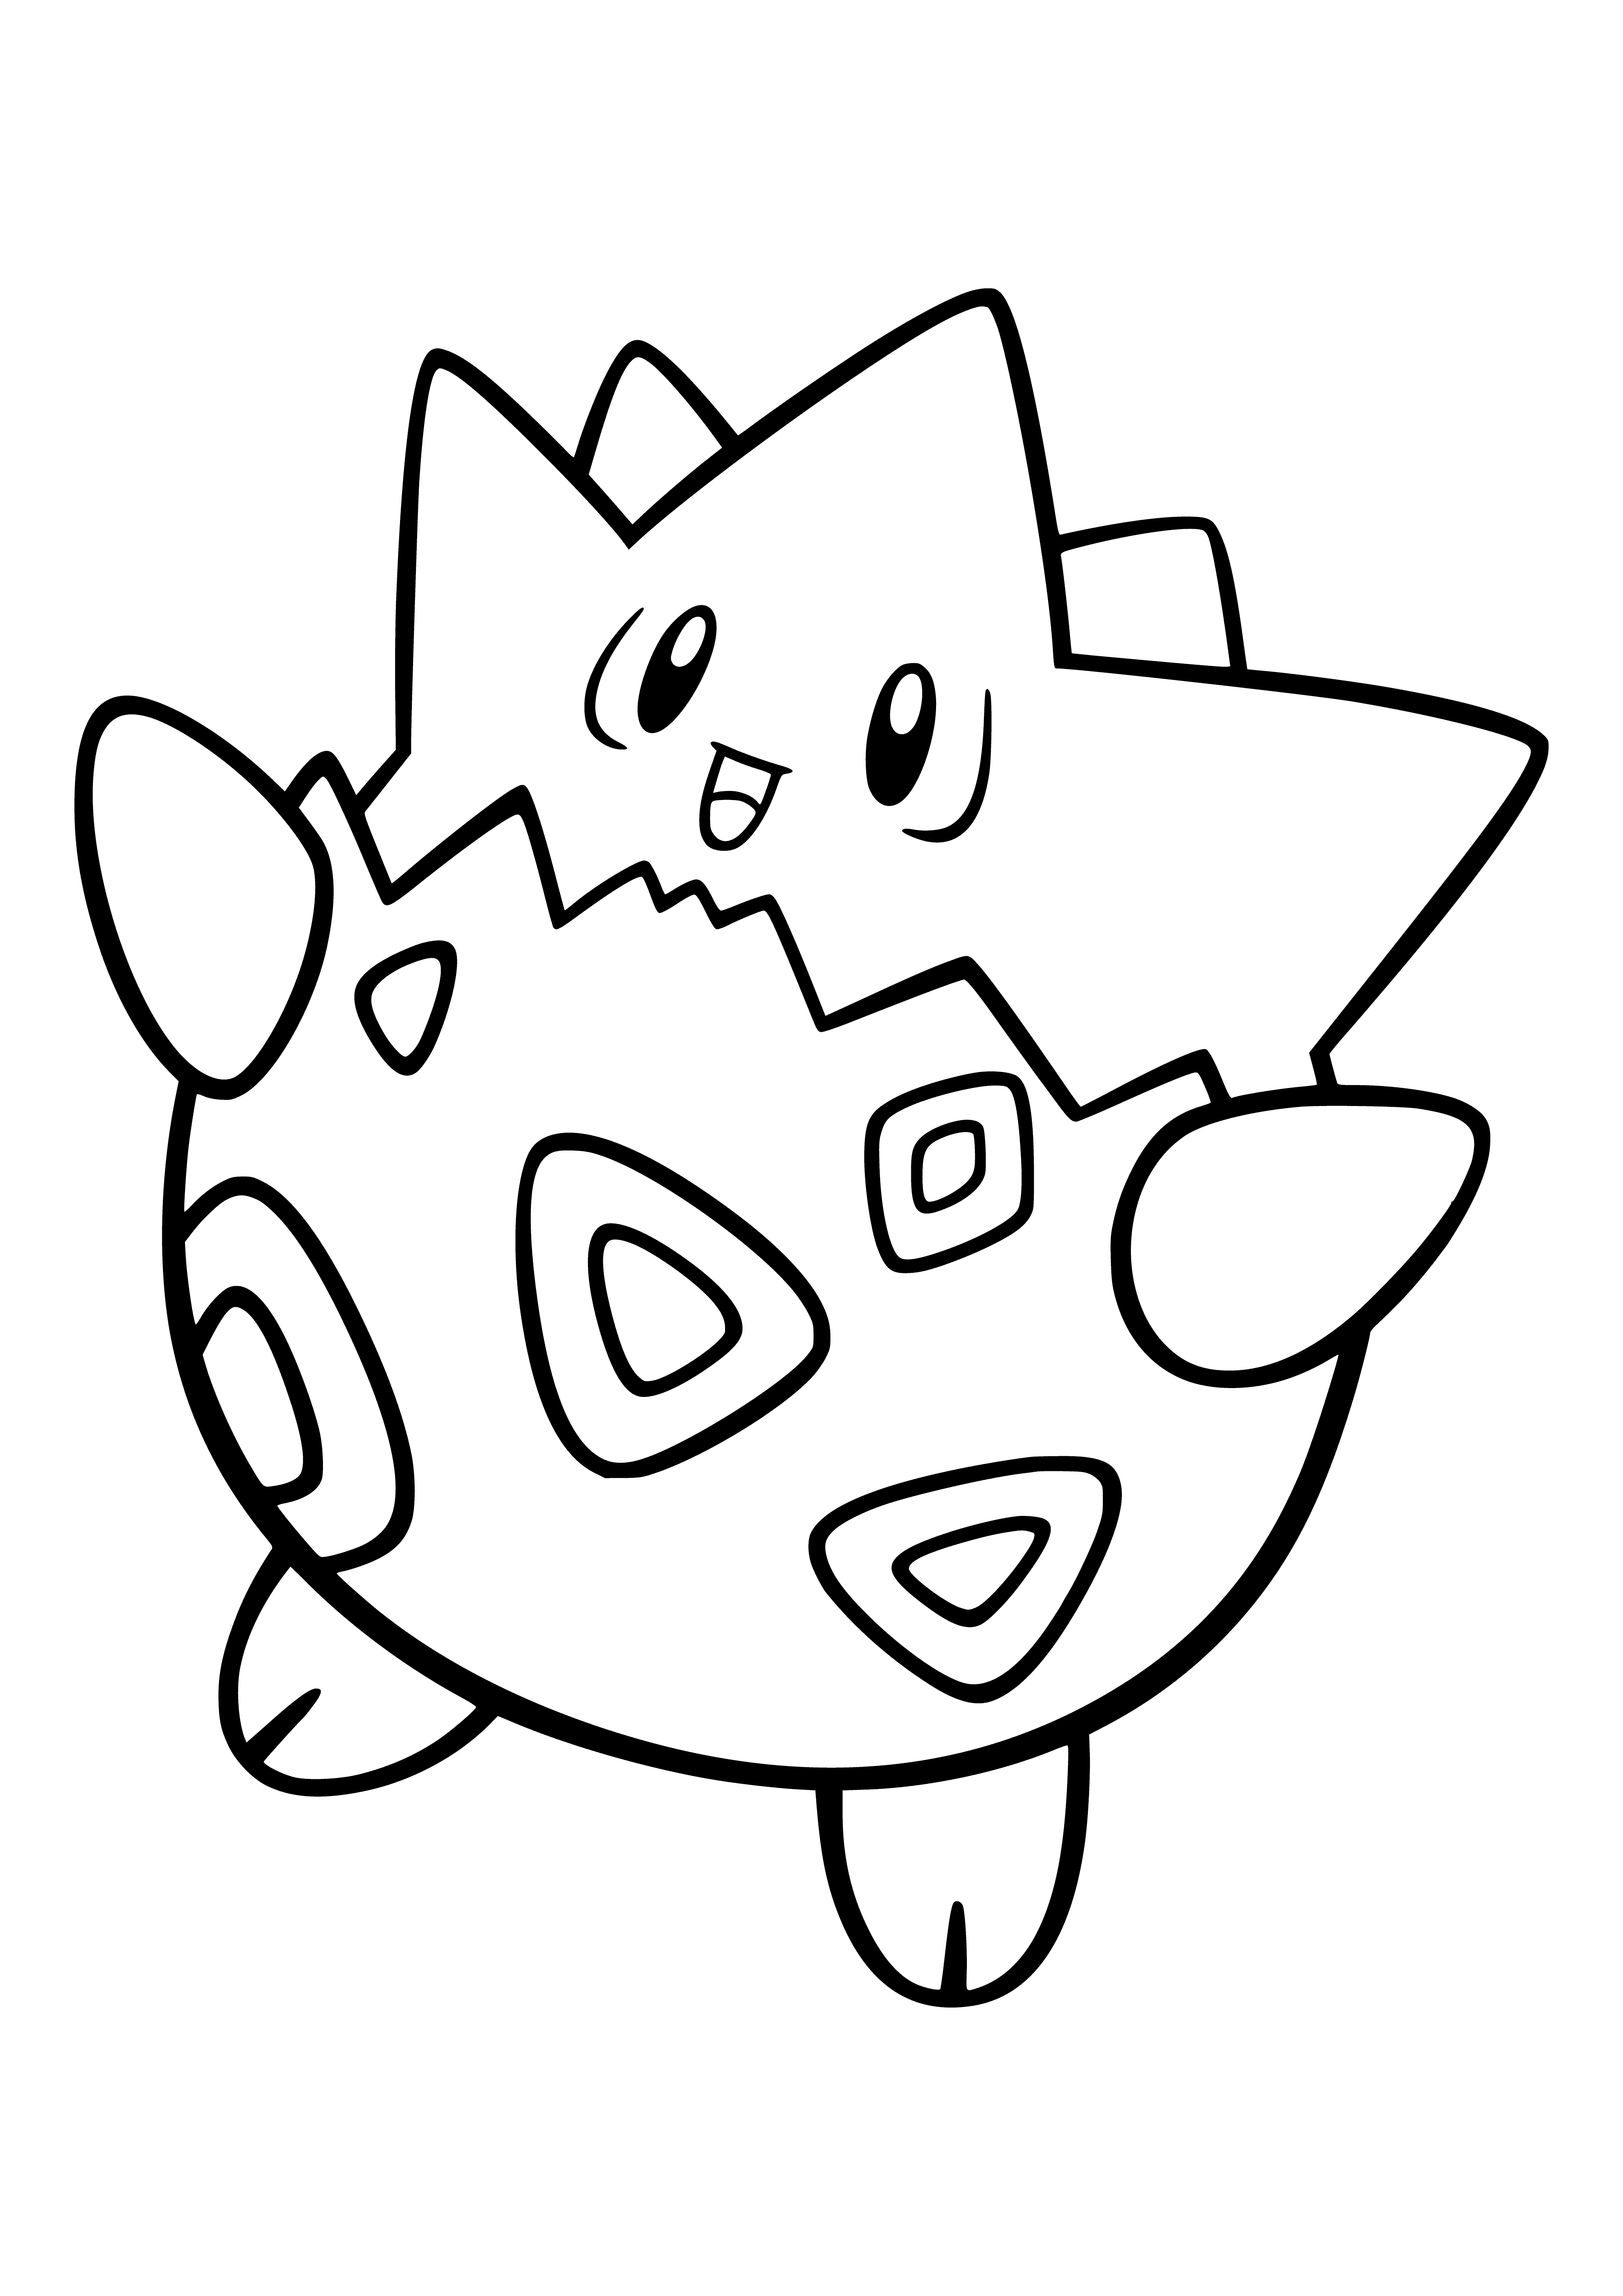 Pokemon Togepi (Togepi) coloring page